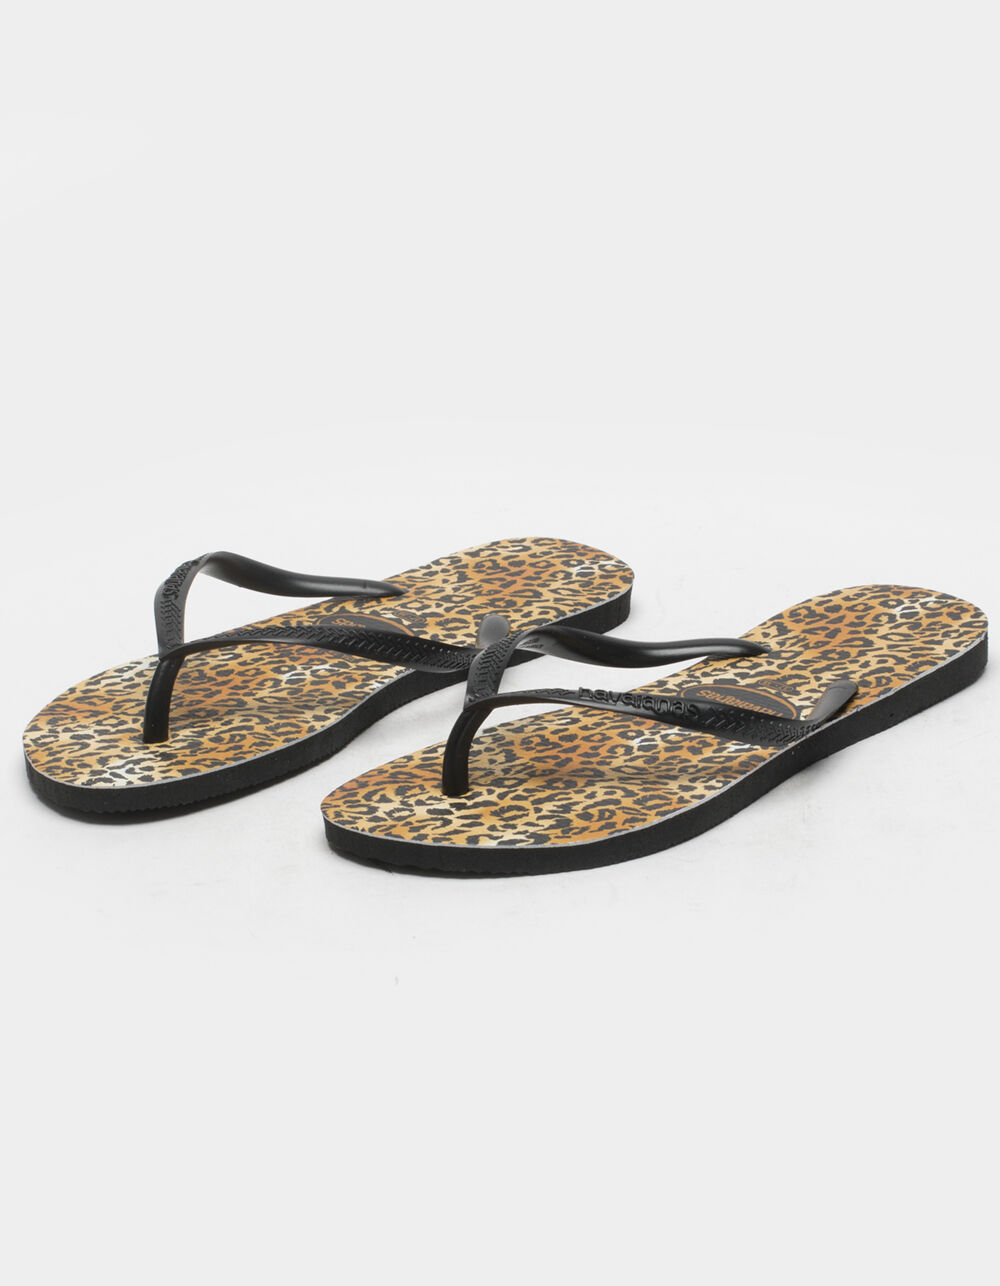 HAVAIANAS Slim Animals Womens Leopard Flip Flop Sandals - BLKMU | Tillys